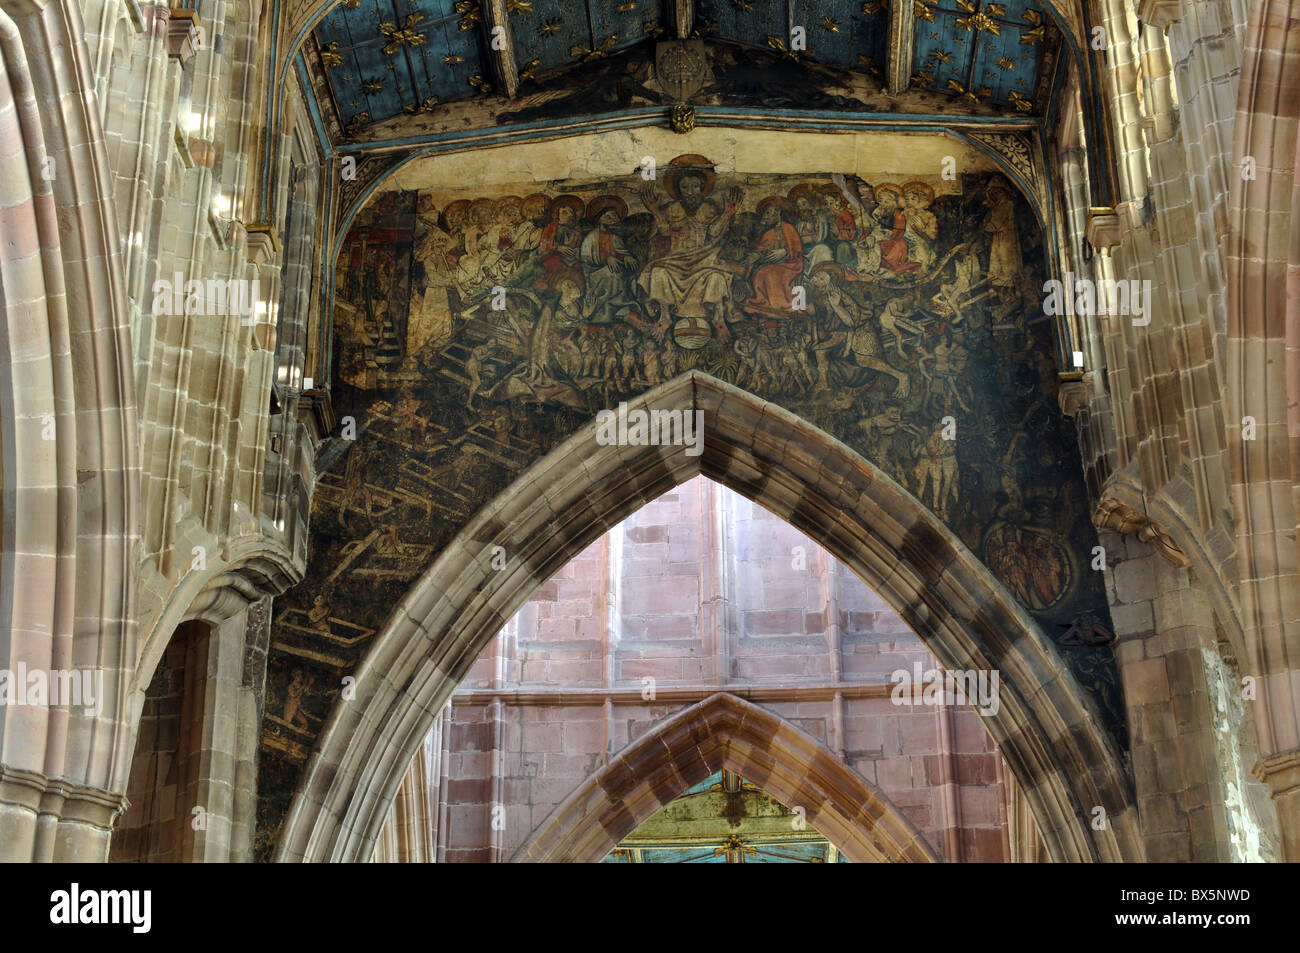 The Doom Painting, Holy Trinity Church, Coventry, England, UK Stock Photo